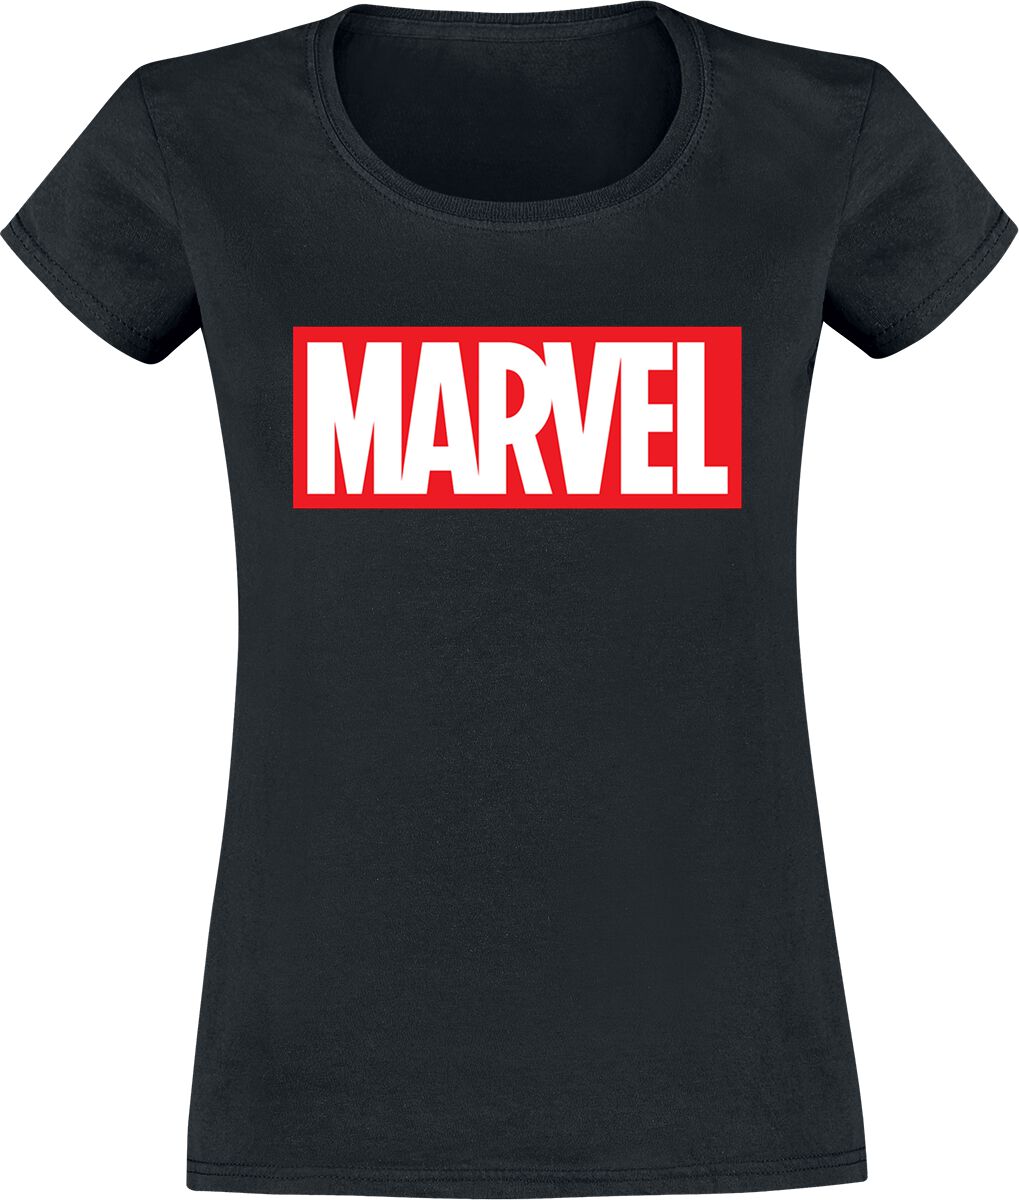 Marvel - Marvel T-Shirt - Logo - XS bis XXL - für Damen - Größe L - schwarz  - EMP exklusives Merchandise!